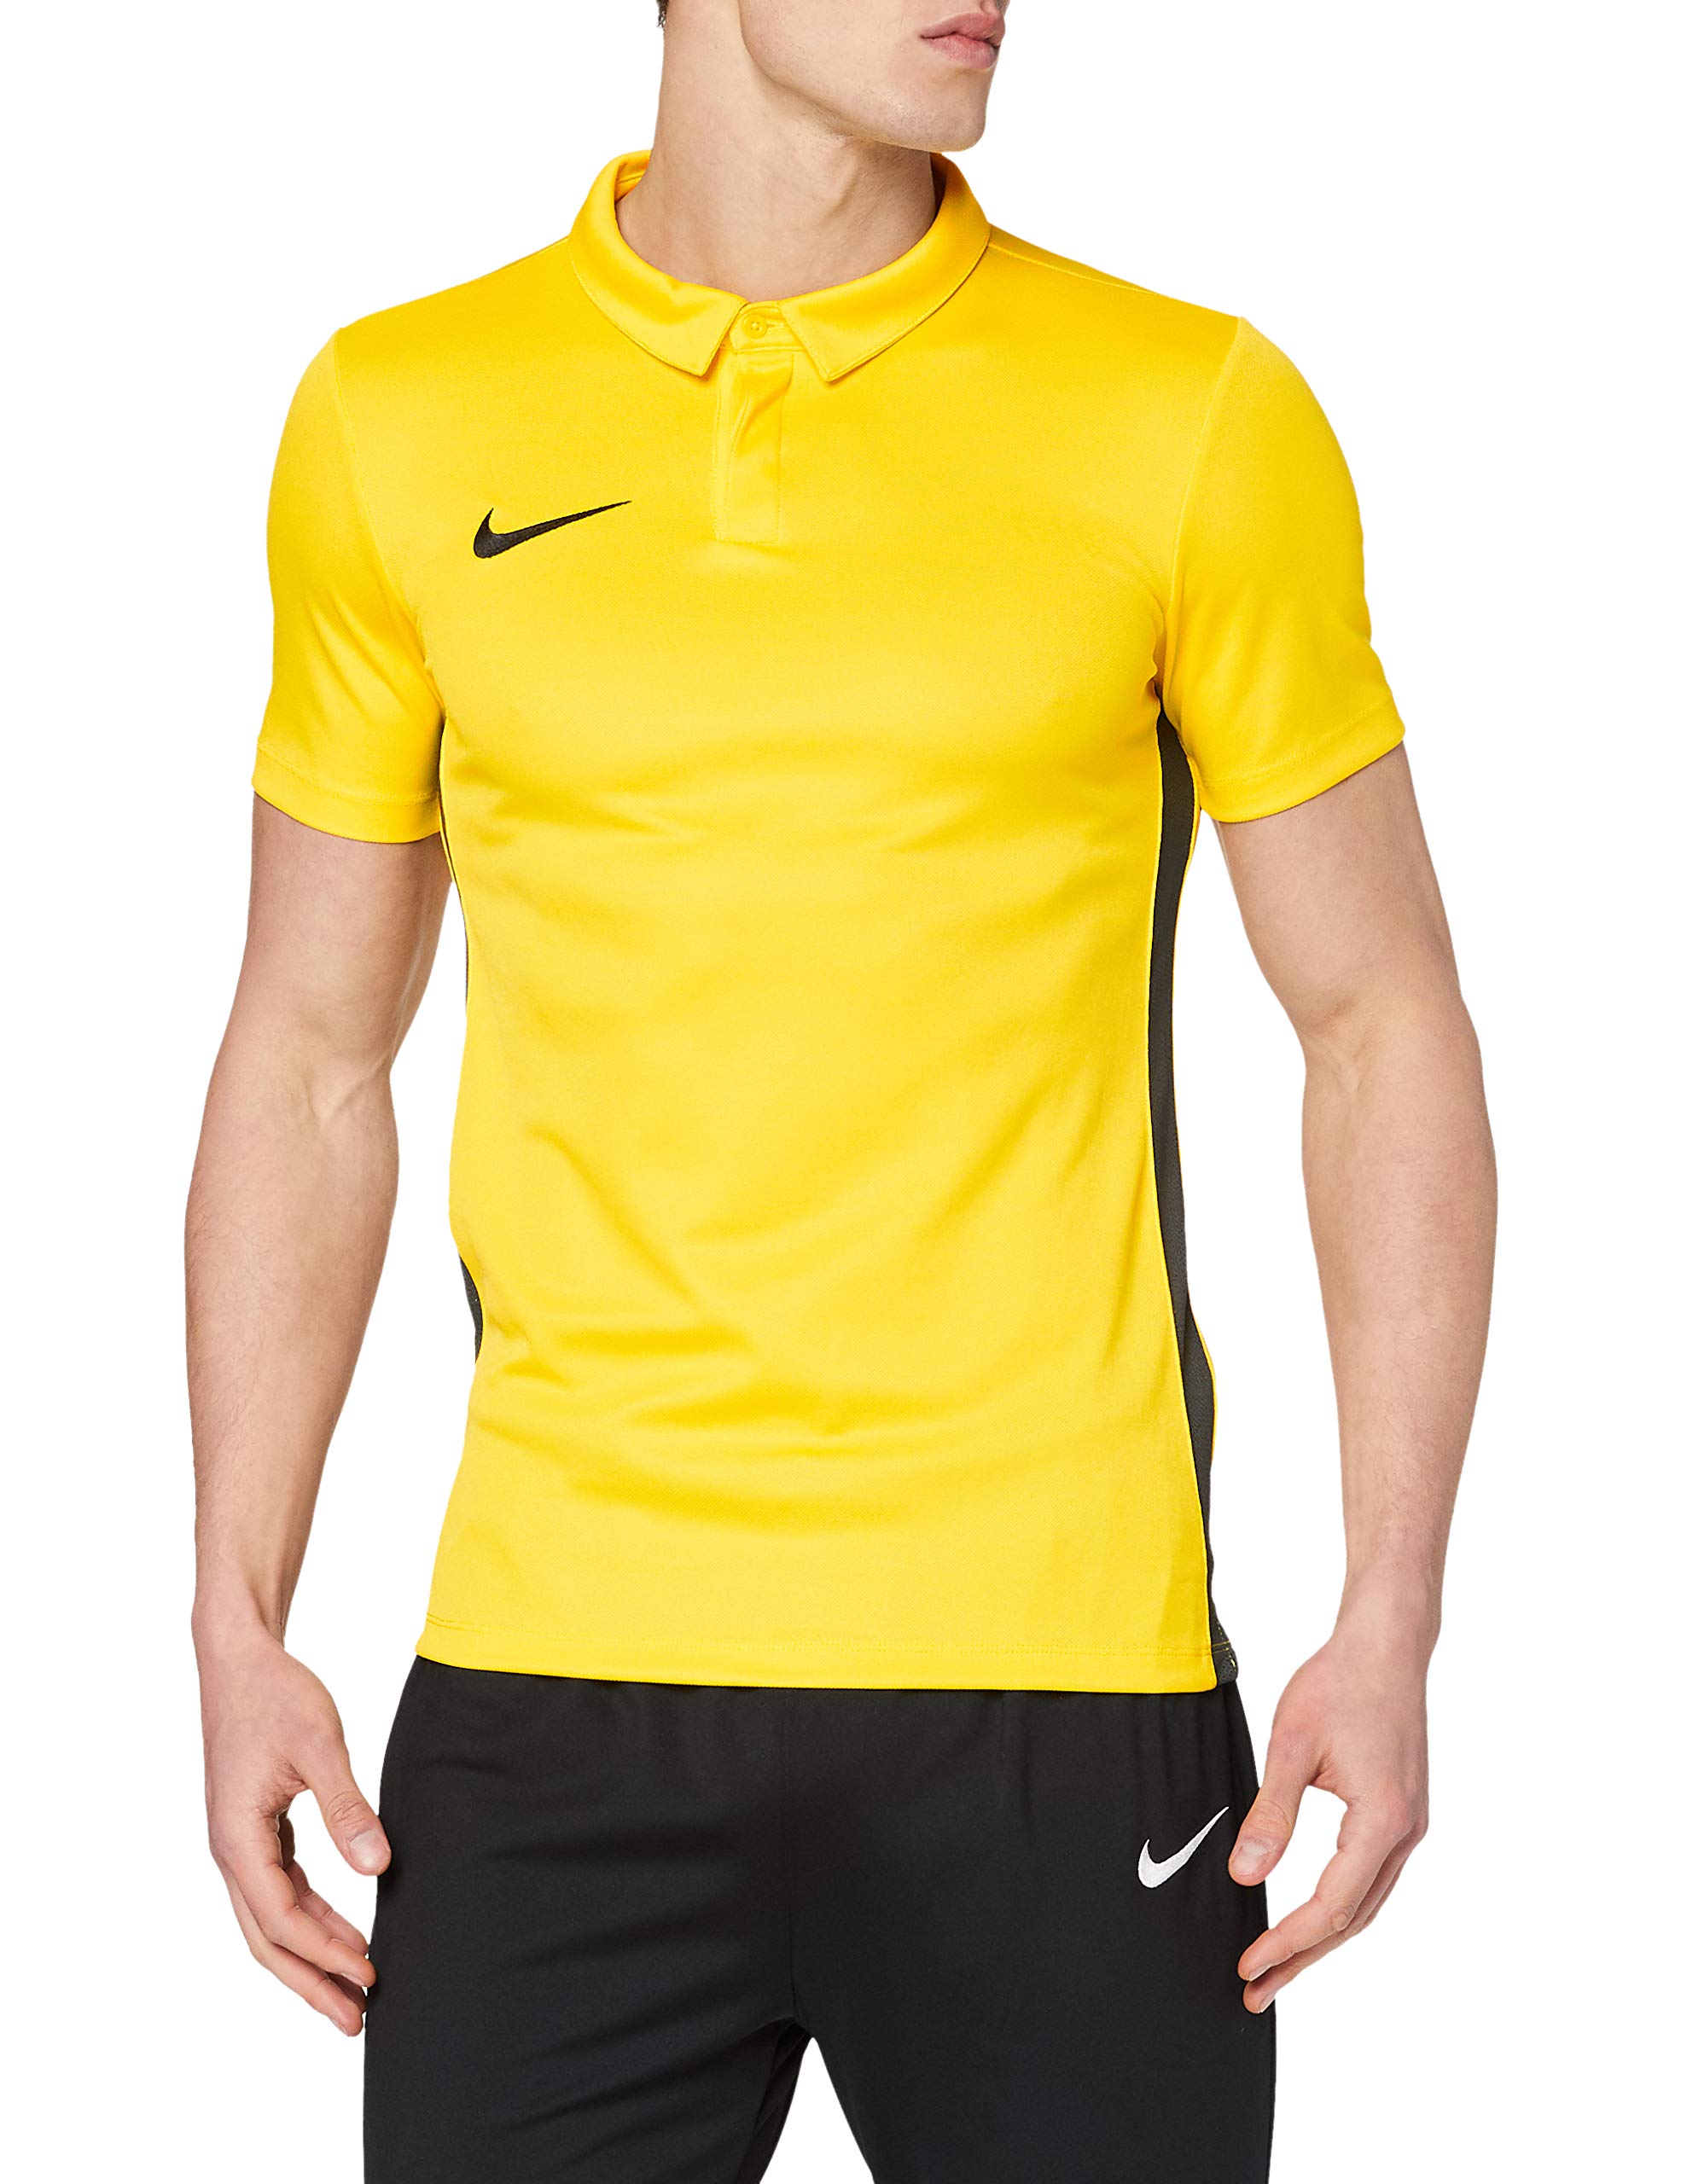 Nike Herren Academy 18 Poloshirt, Tour Yellow/Anthracite/Black, XXL EU